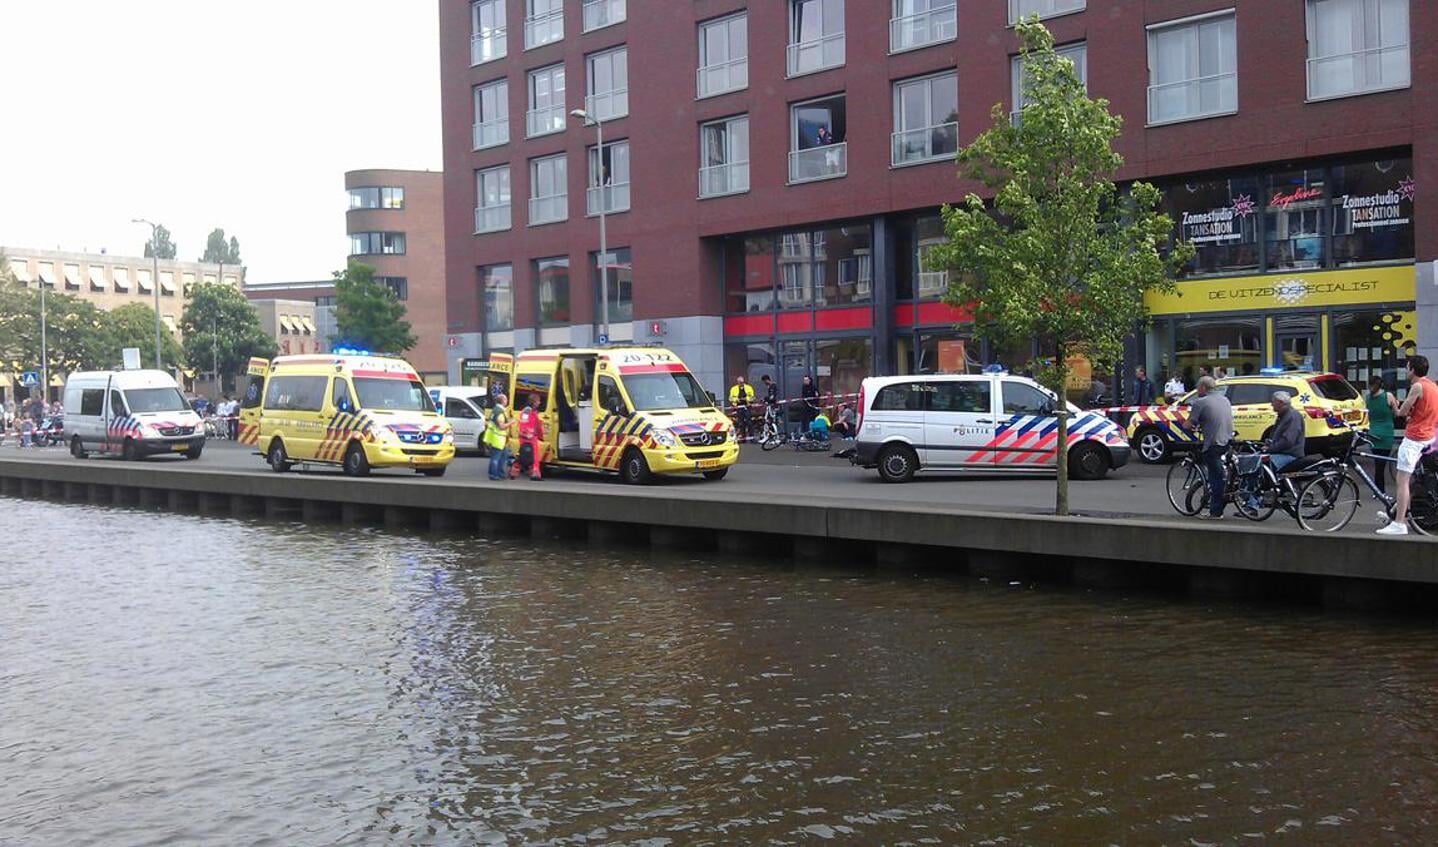 De traumahelikopter landde op de Nieuweweg vanwege het ongeval op de Markendaalseweg. foto Bouke Tuit